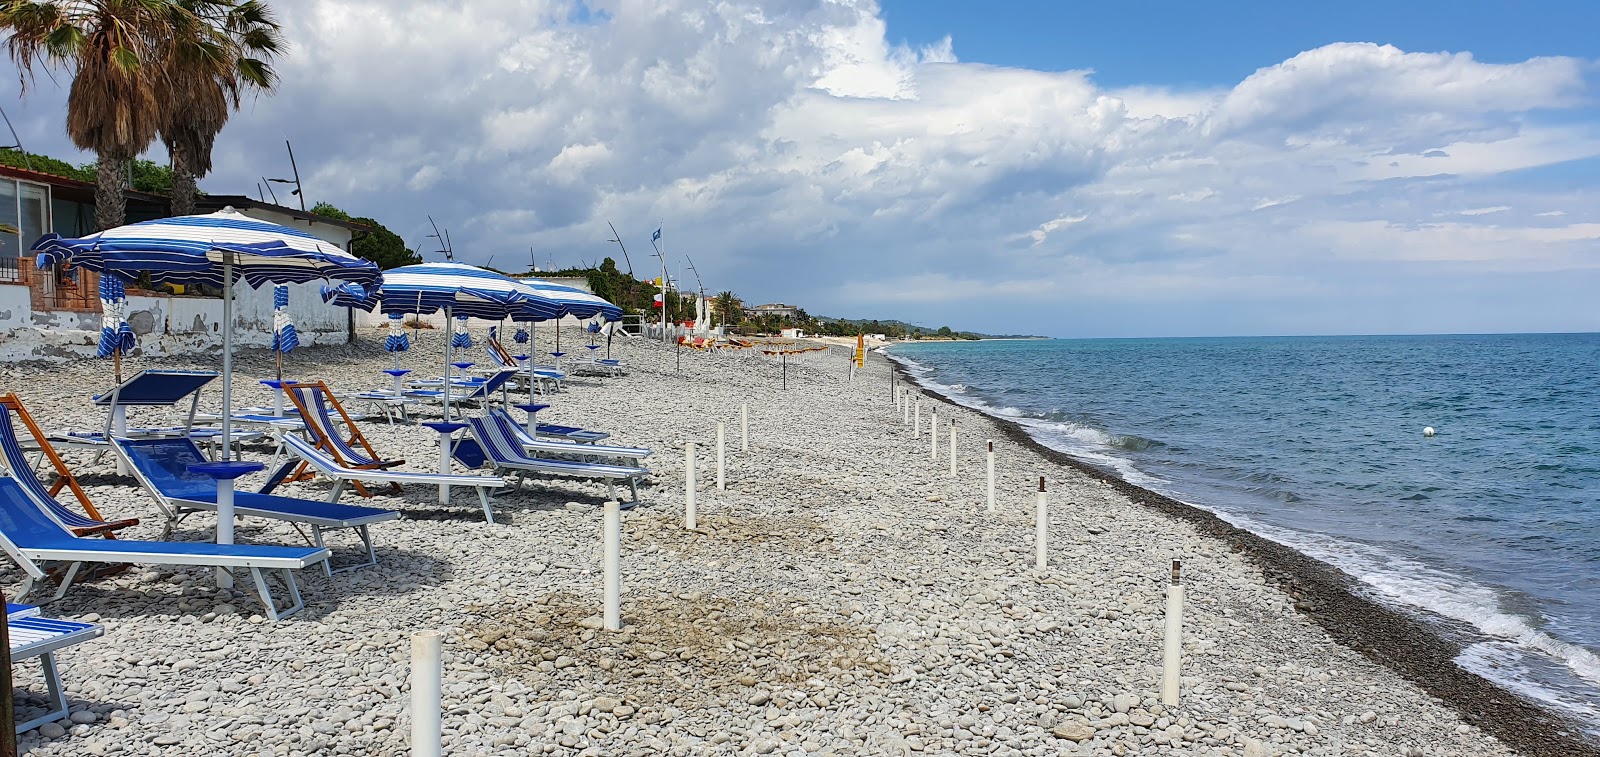 Photo de Trebisacce beach - endroit populaire parmi les connaisseurs de la détente